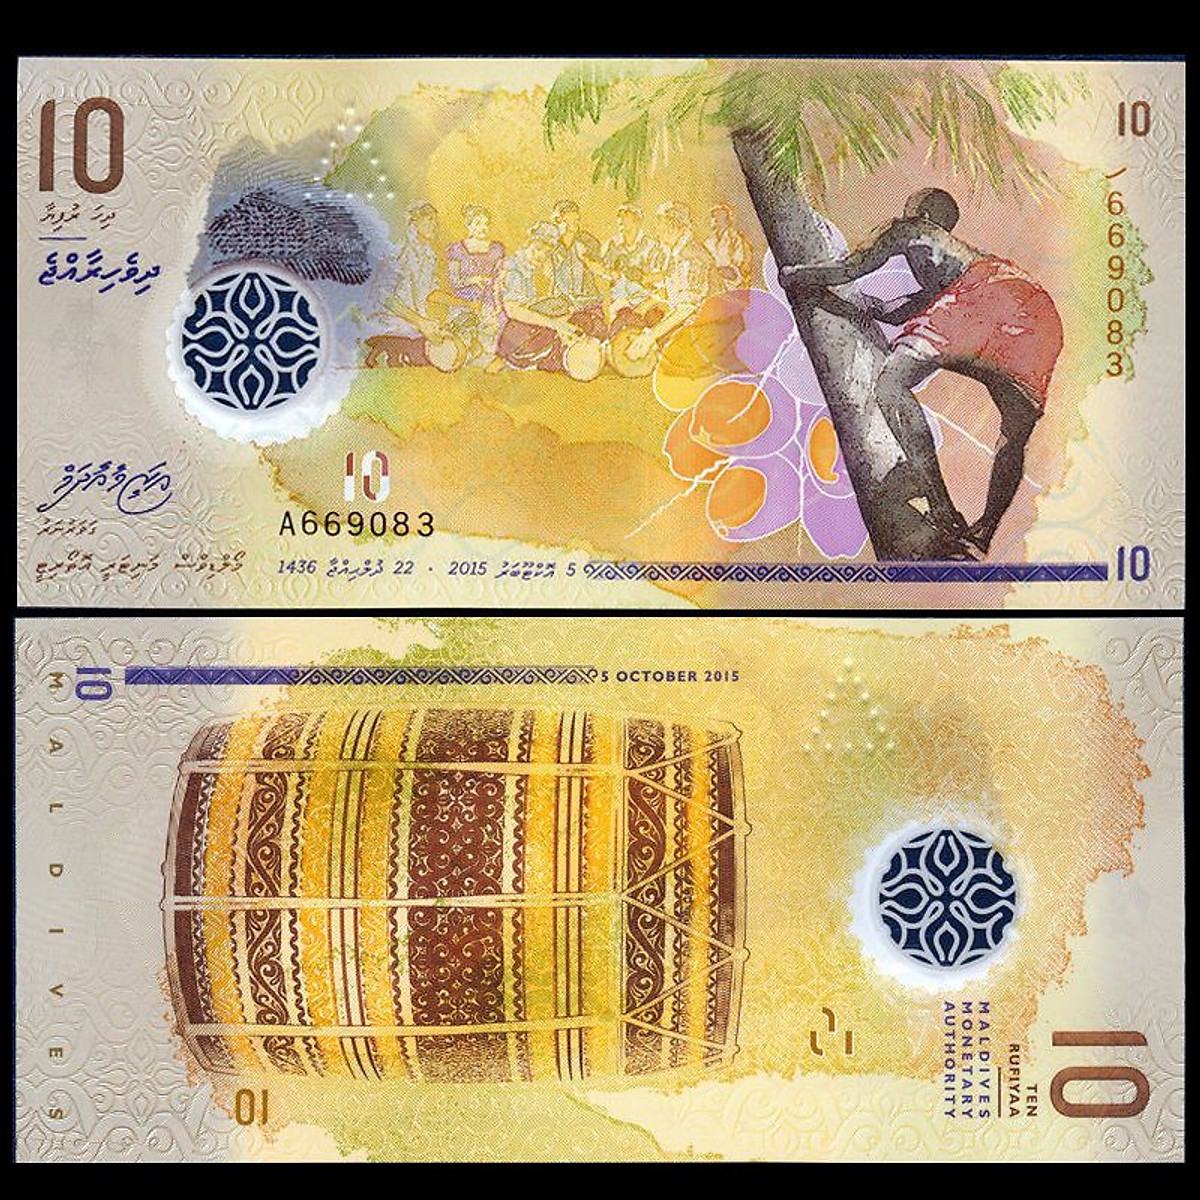 Tiền thế giới, Thiên dường du lịch 10 Rufiyaa Maldives polymer sưu tầm  - Tiền mới keng 100% - Tặng túi nilon bảo quản